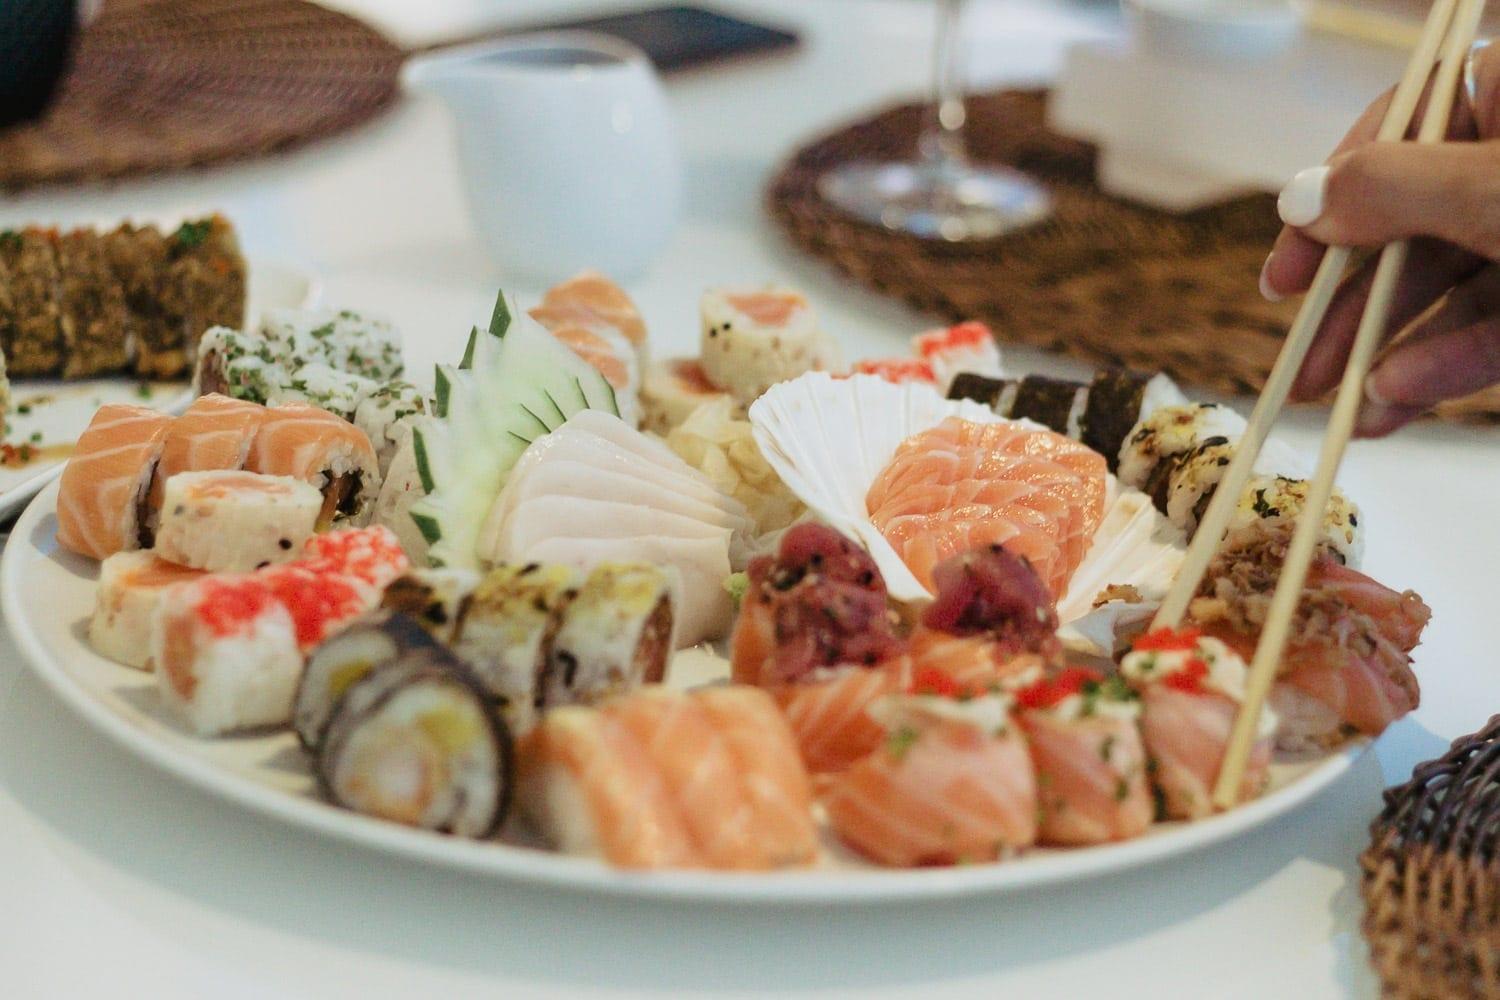 11 restaurantes para comer um delicioso sushi em Goiânia